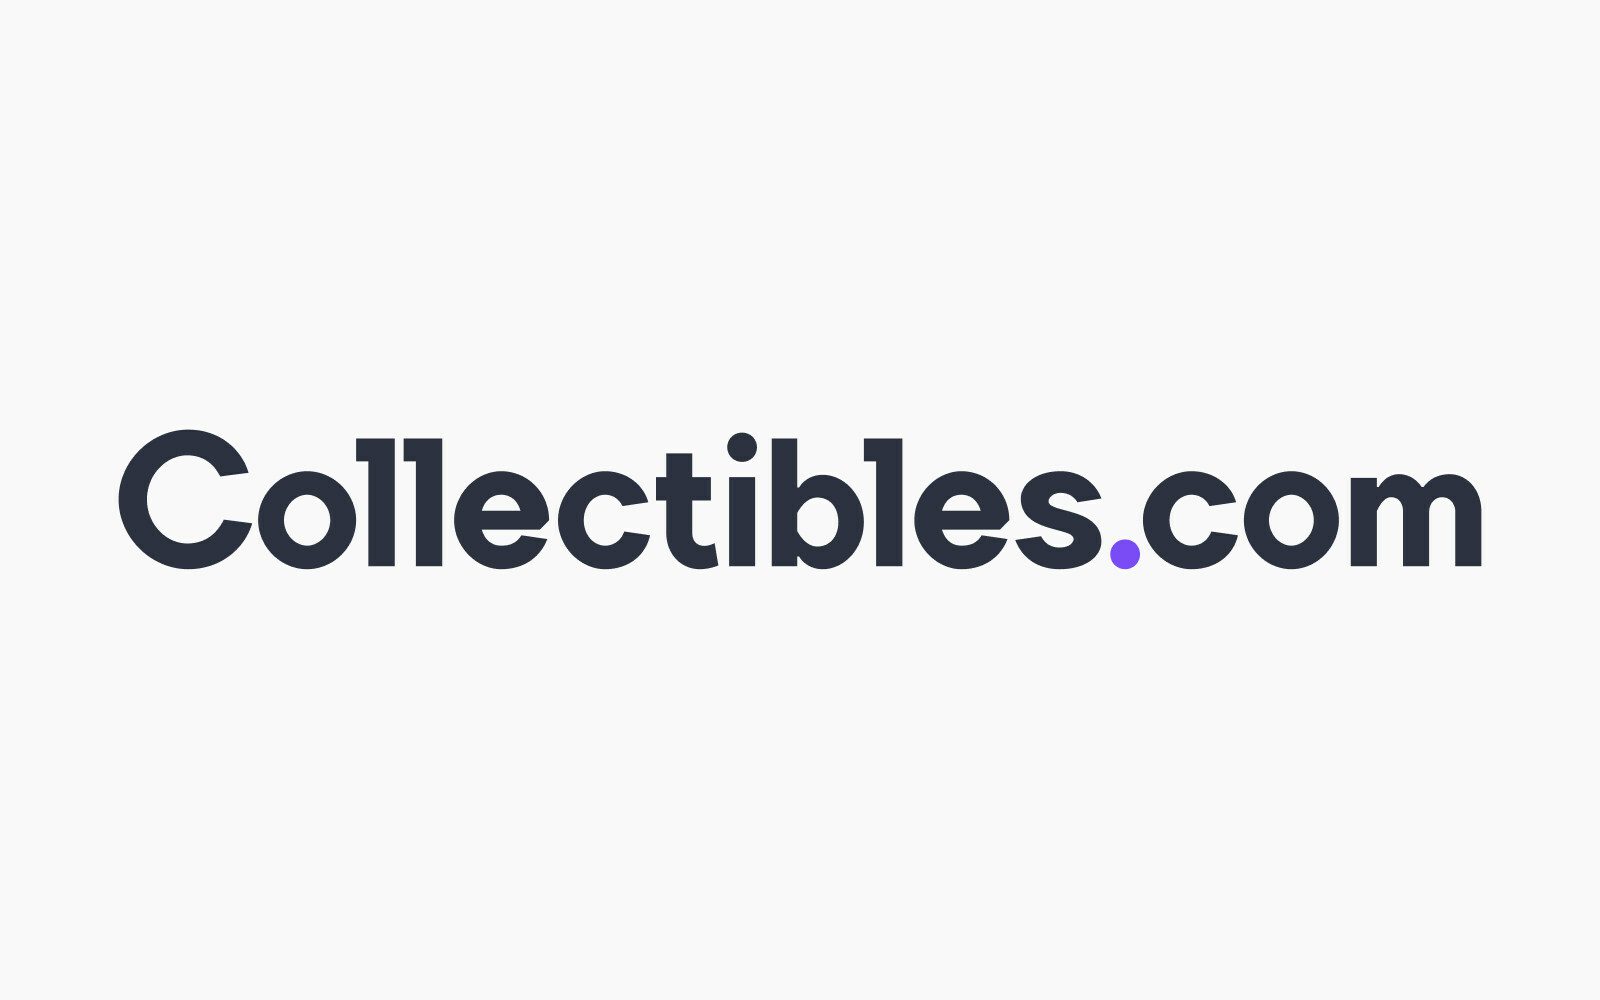 Collectibles.com Meningkatkan Pasar Kolektor Web3 dengan Putaran Benih $5M - NFTgators